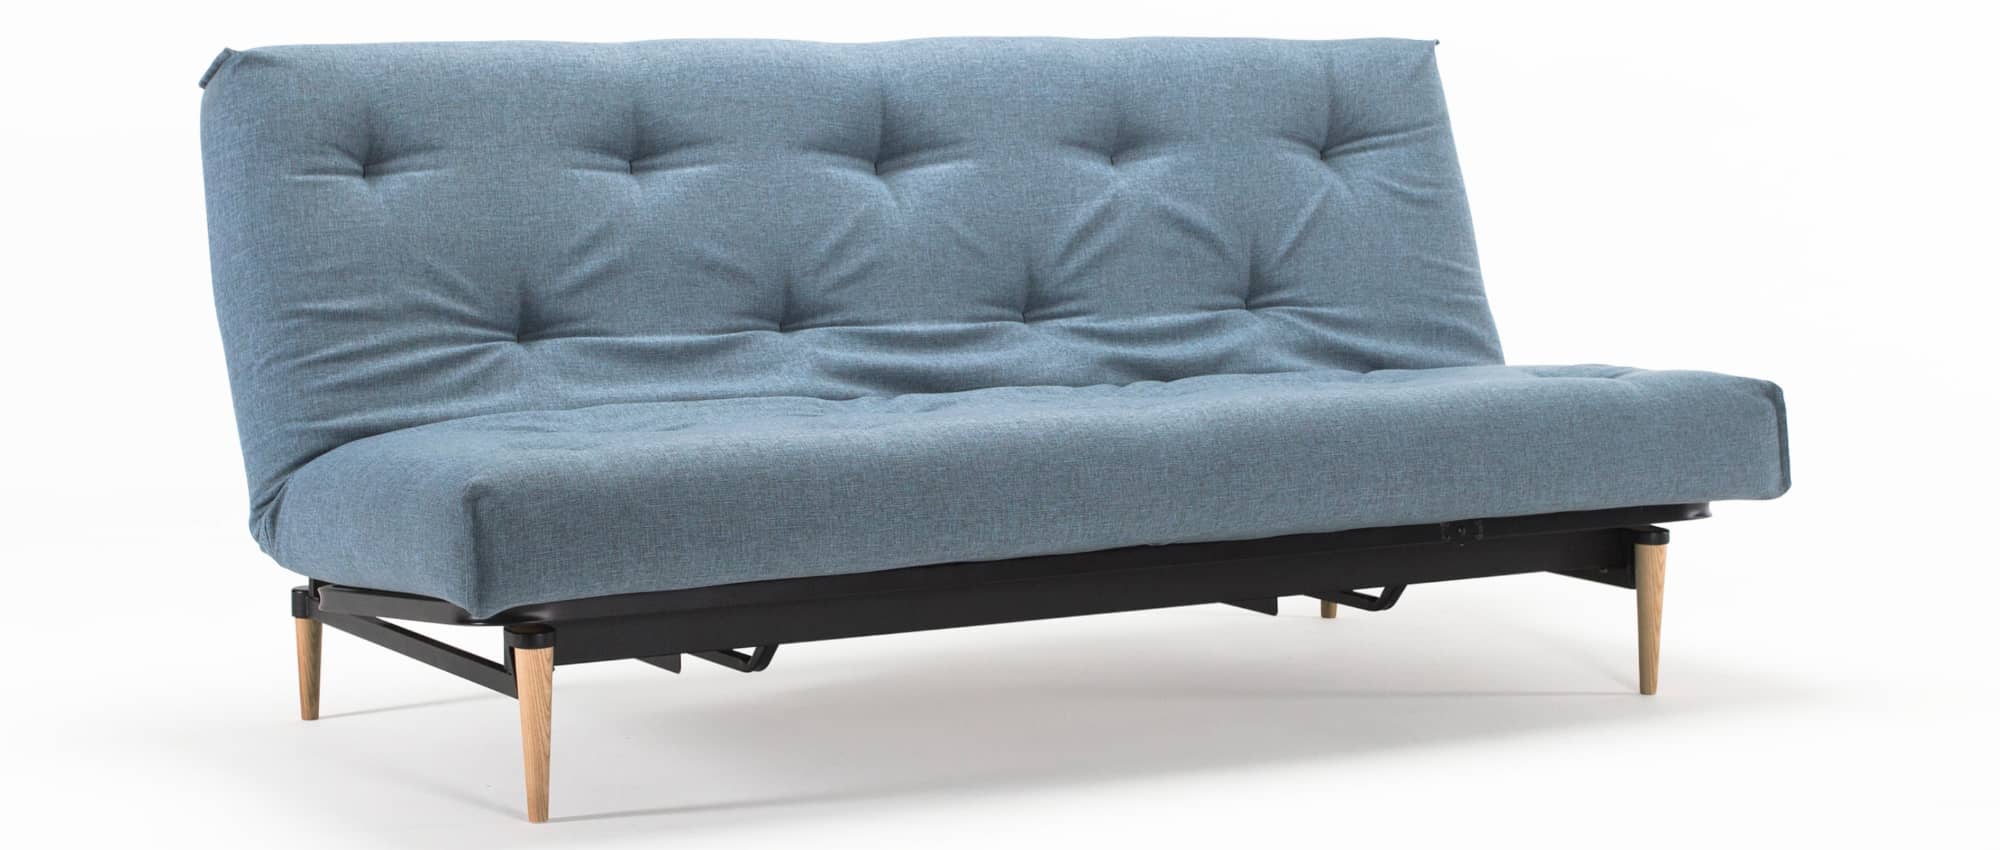 Schlafsofa COLPUS Sofabett von Innovation, Dauerschläfer mit Matratze und Lattenrost - Liegefläche 140x200 cm